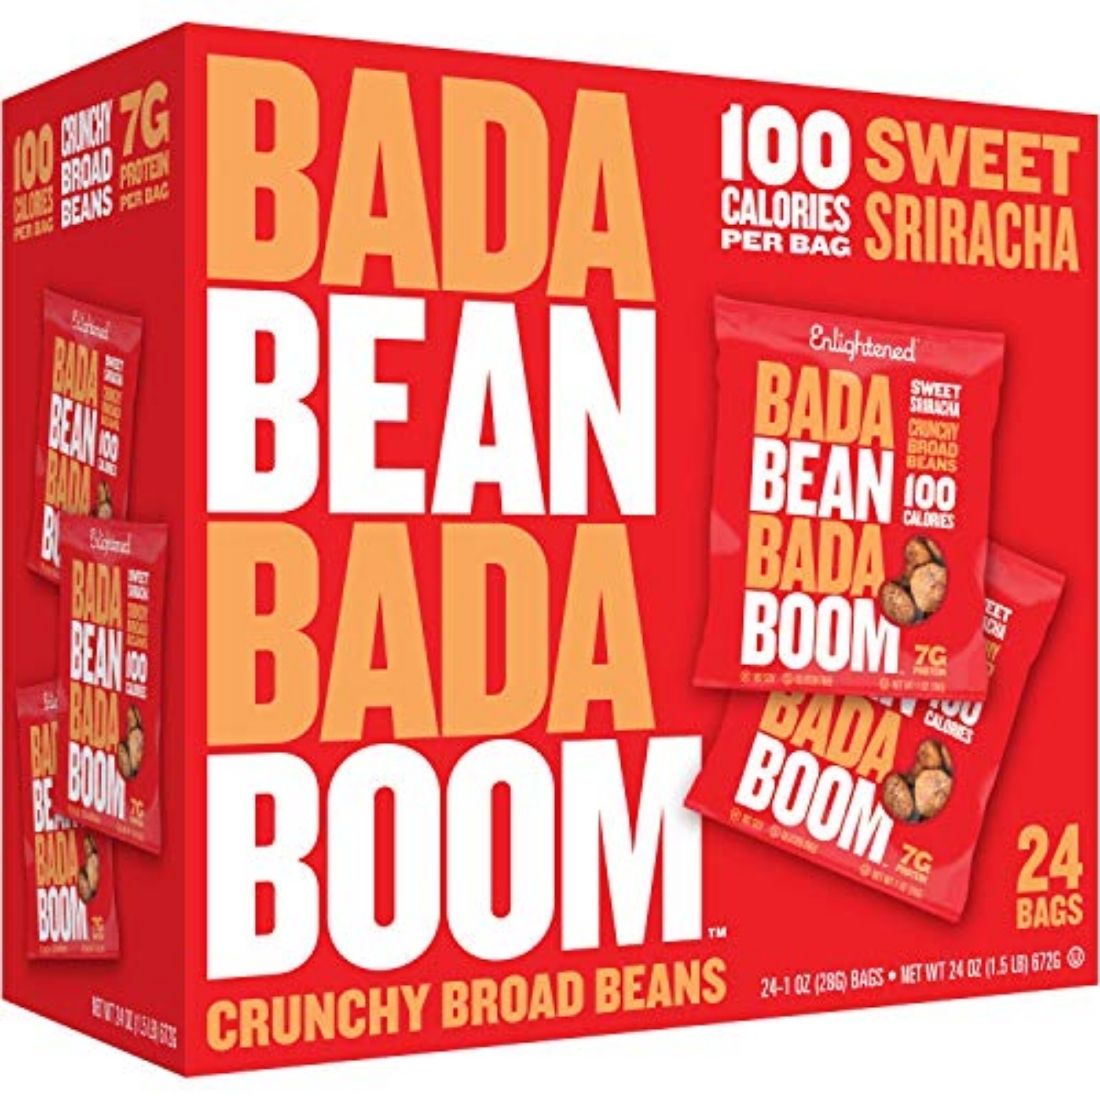 Bada Bean Snacks (Formerly Enlightened Bean Snacks)